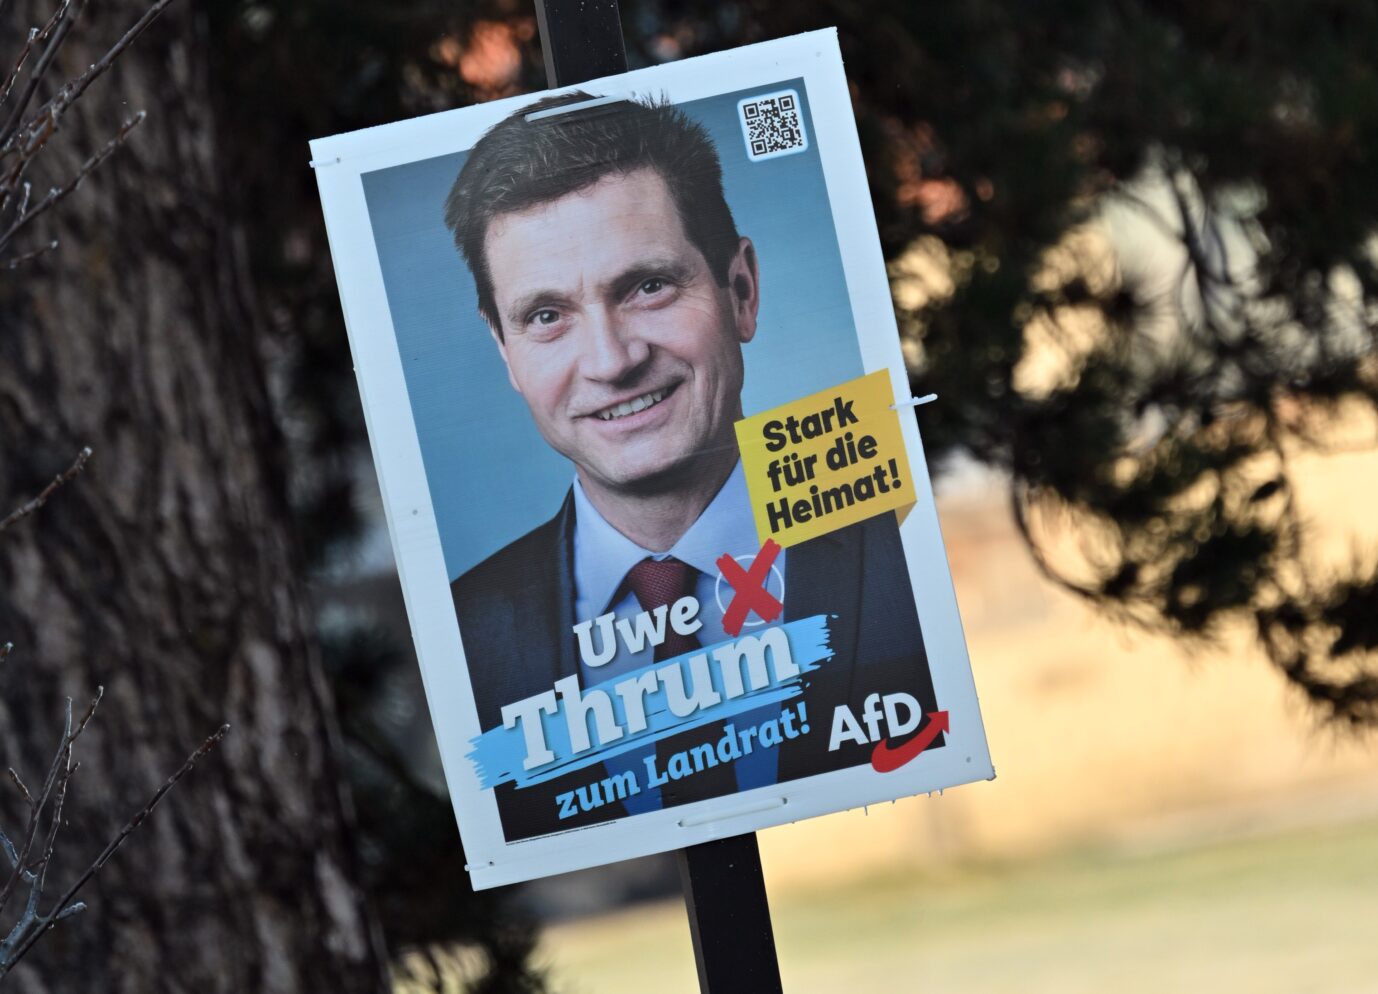 Sieg im ersten Wahlgang: AfD-Kandidat Uwe Thrum könnte neuer Landrat im Saale-Orla-Kreis, Thüringen werden.